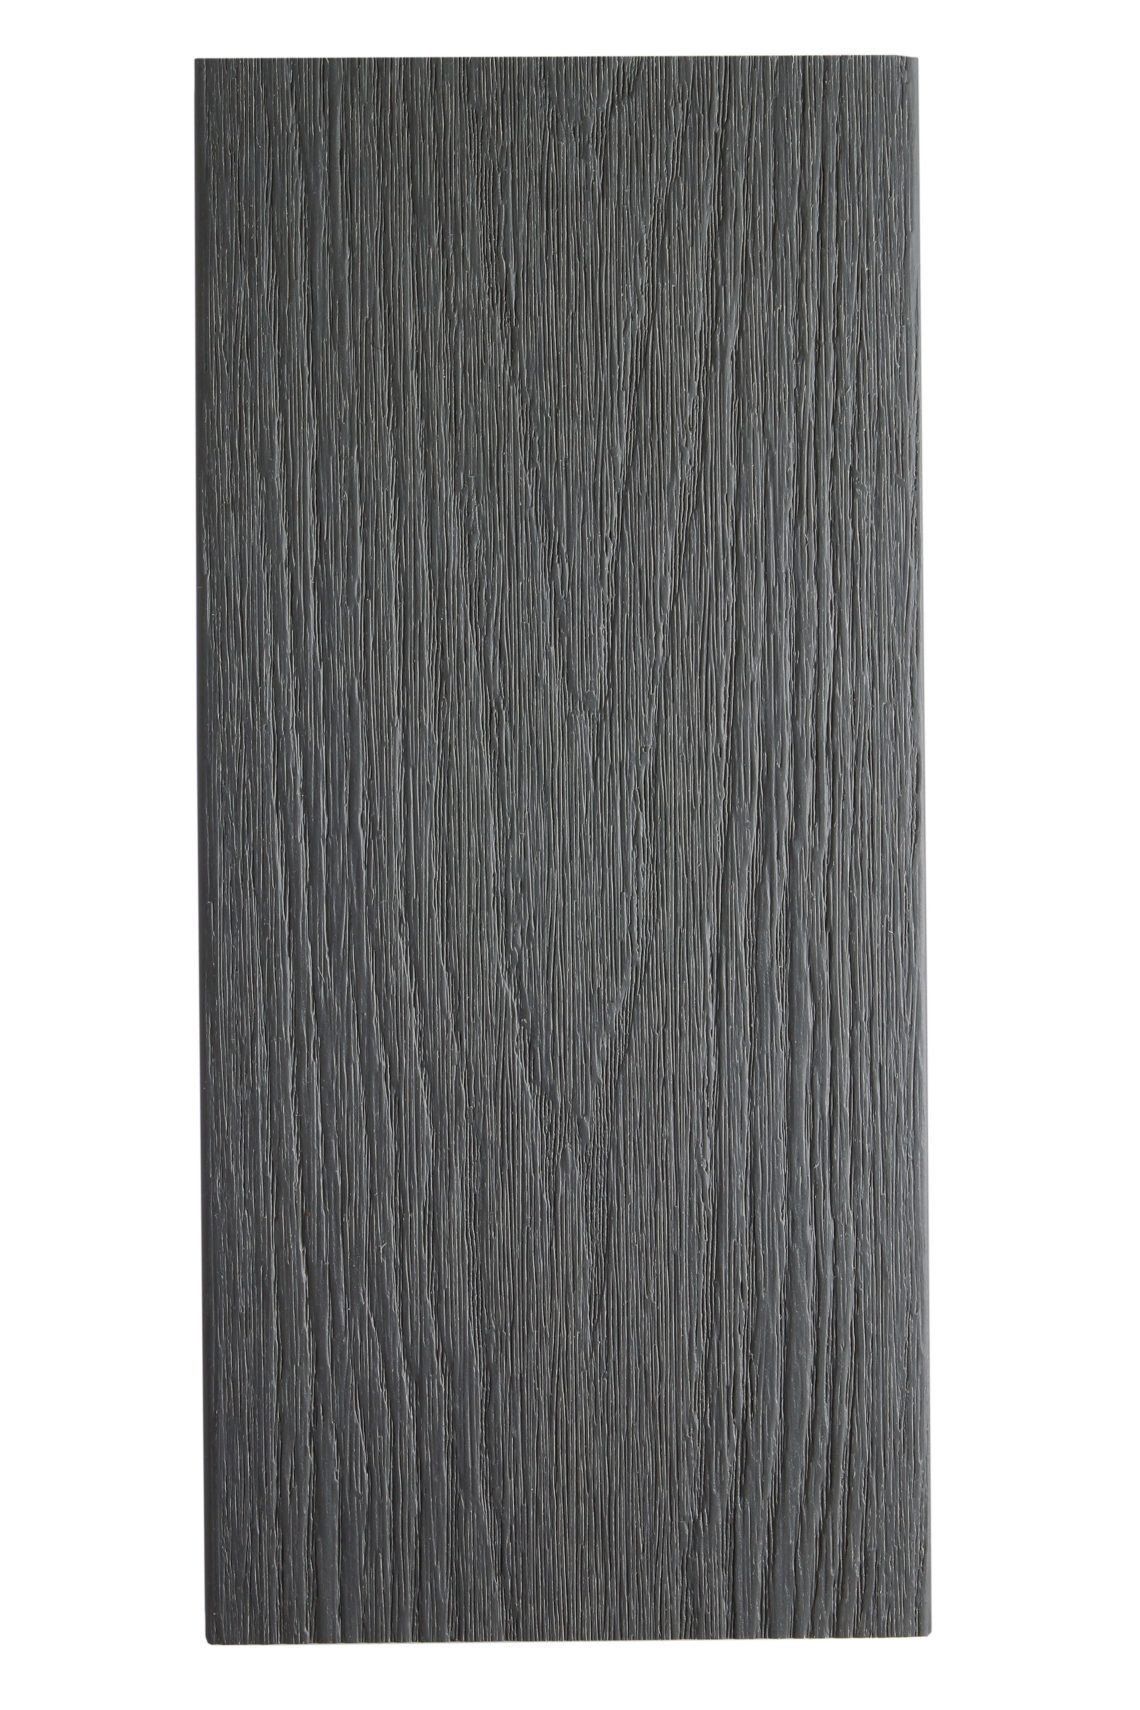 Dark grey - face texturée - clôture en composite - brooklyn - densité 1170 kg/m3_0